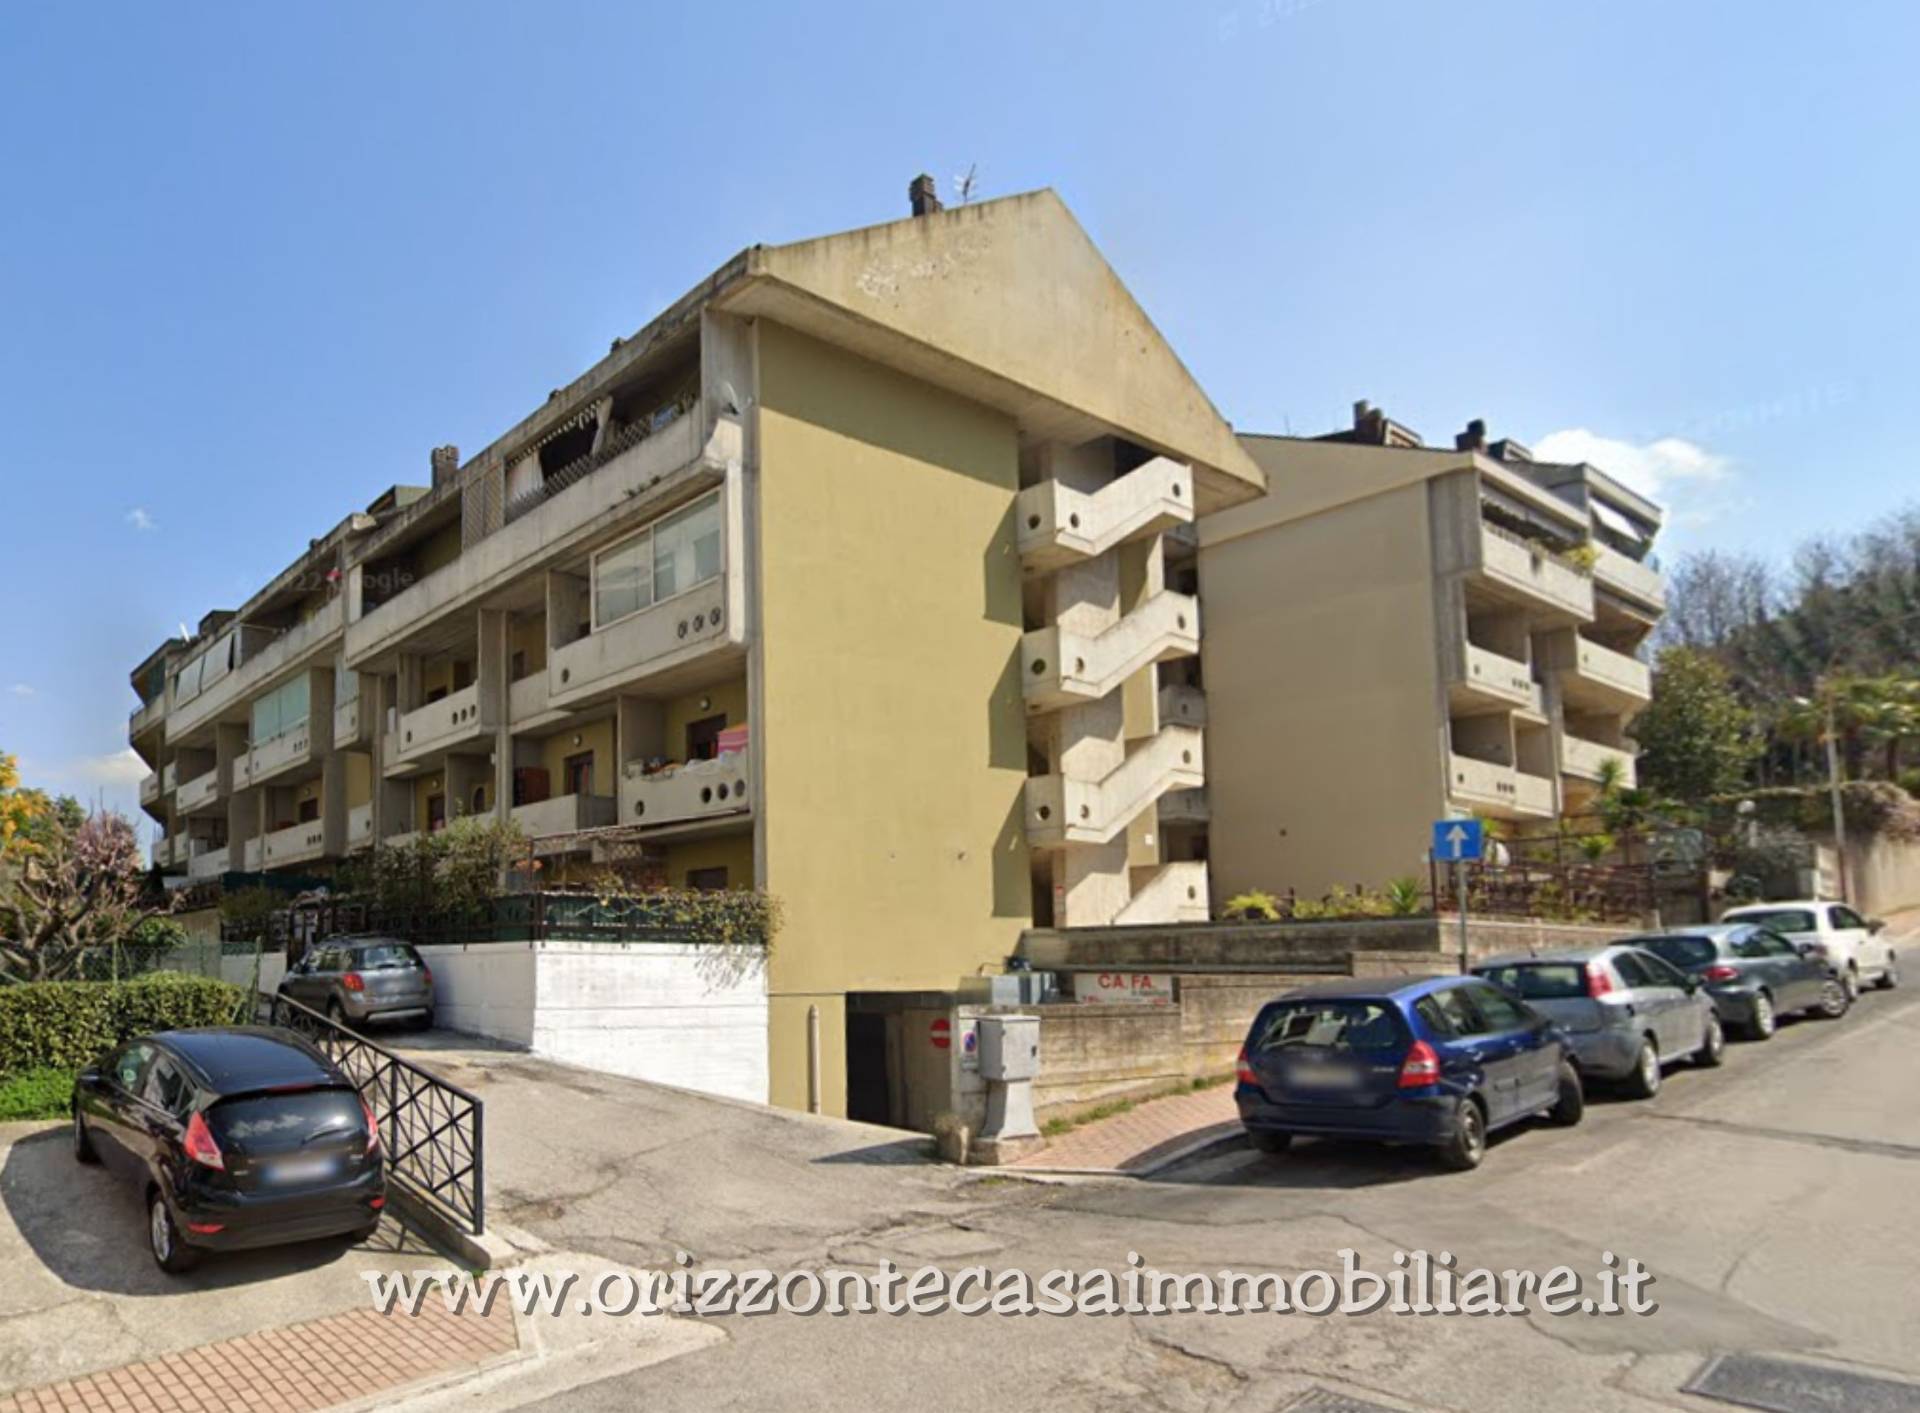 Appartamento in vendita a Folignano, 3 locali, zona Località: VillaPigna, prezzo € 48.000 | PortaleAgenzieImmobiliari.it